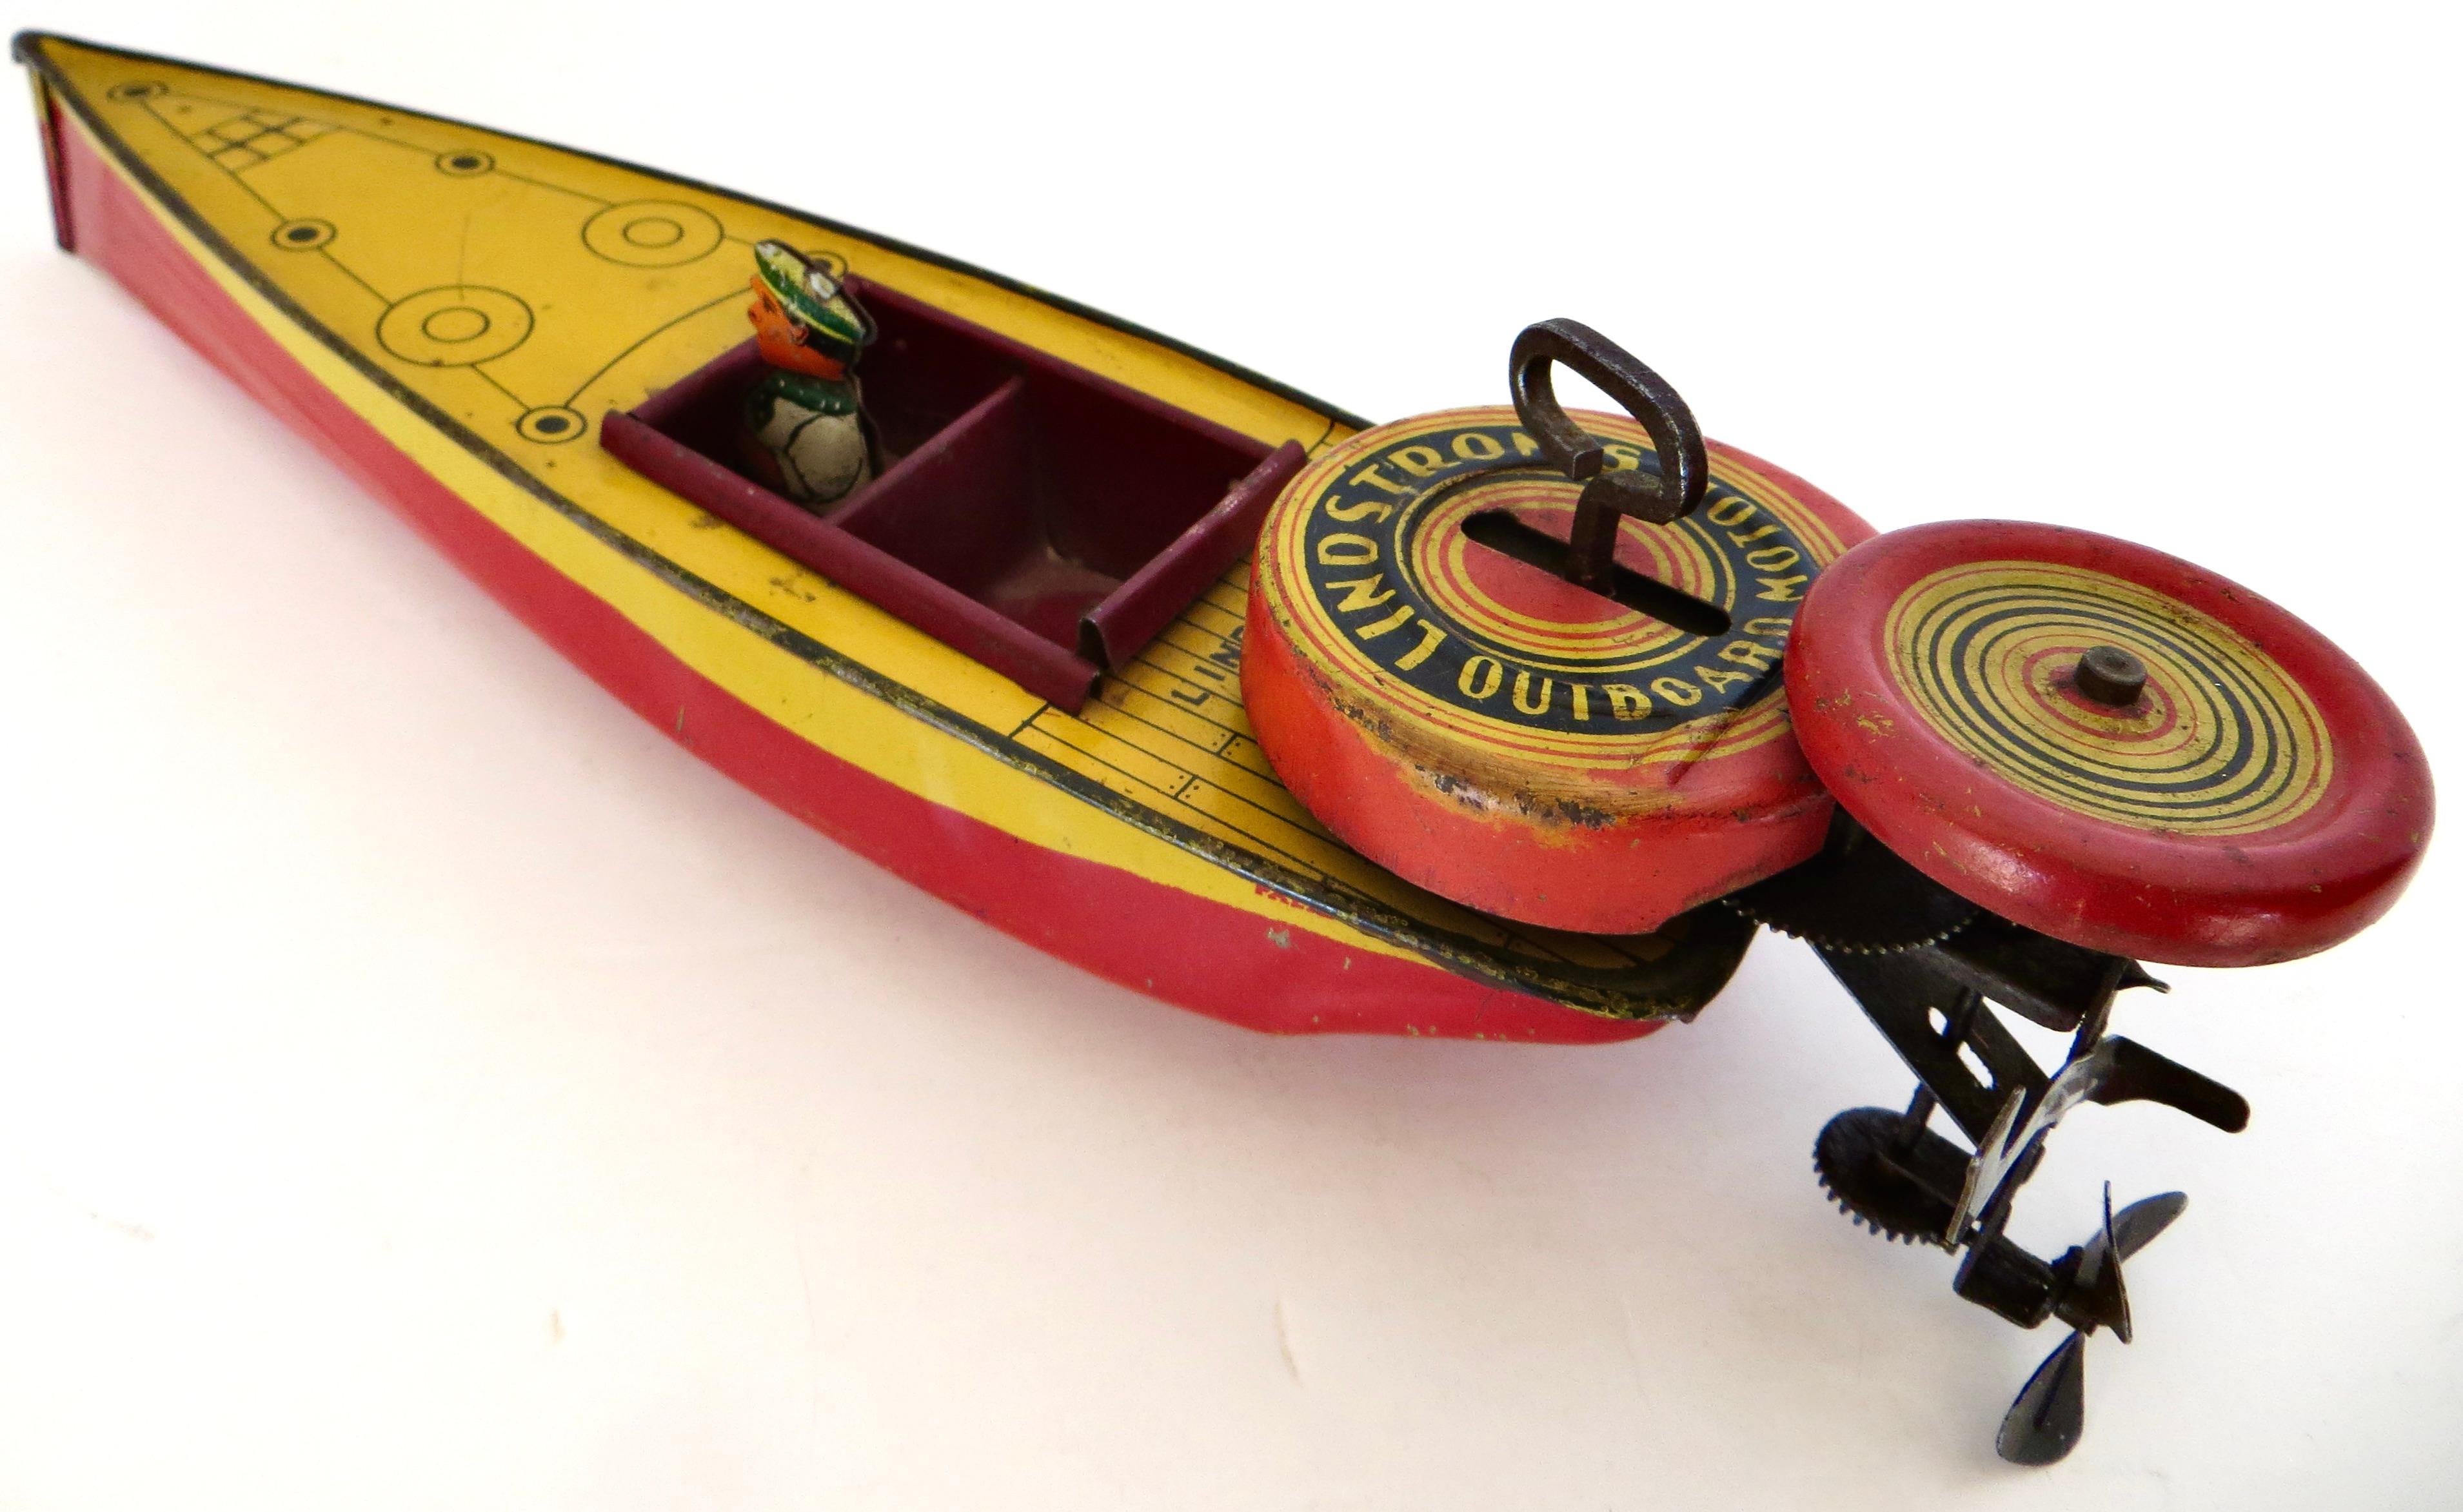 Bateau rapide vintage fabriqué par la Lindstrom Toy Company de Bridgeport Connecticut, vers 1933 ou avant ; la société Lindstrom a été fondée en 1913 et a fabriqué des jouets à remonter en étain de qualité jusqu'à la Seconde Guerre mondiale, date à